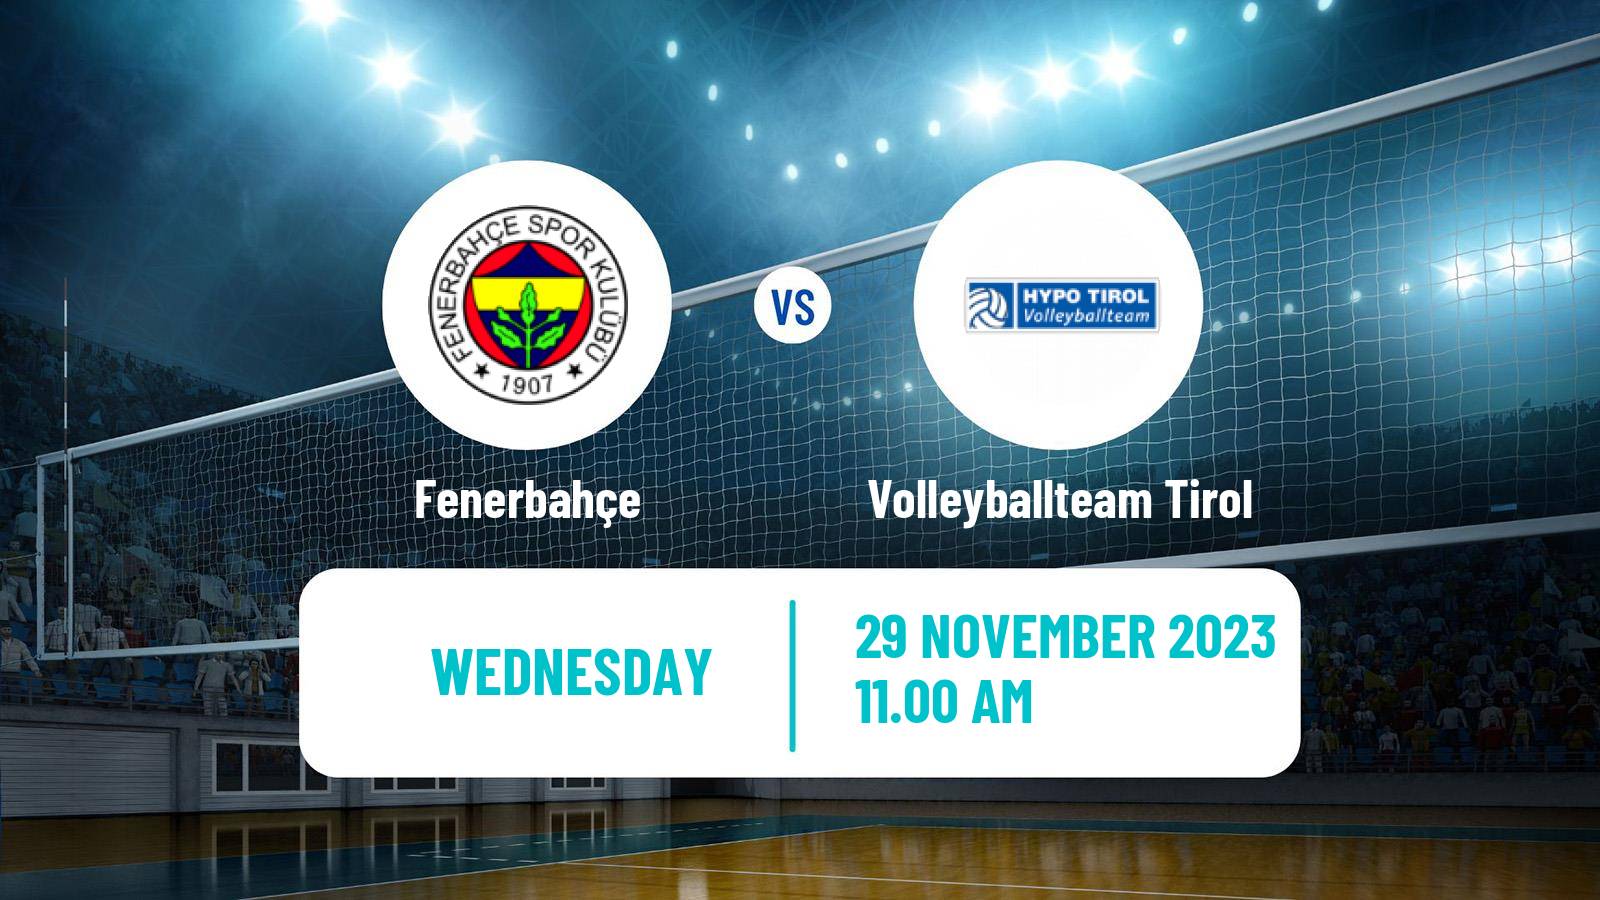 Volleyball CEV Cup Fenerbahçe - Volleyballteam Tirol